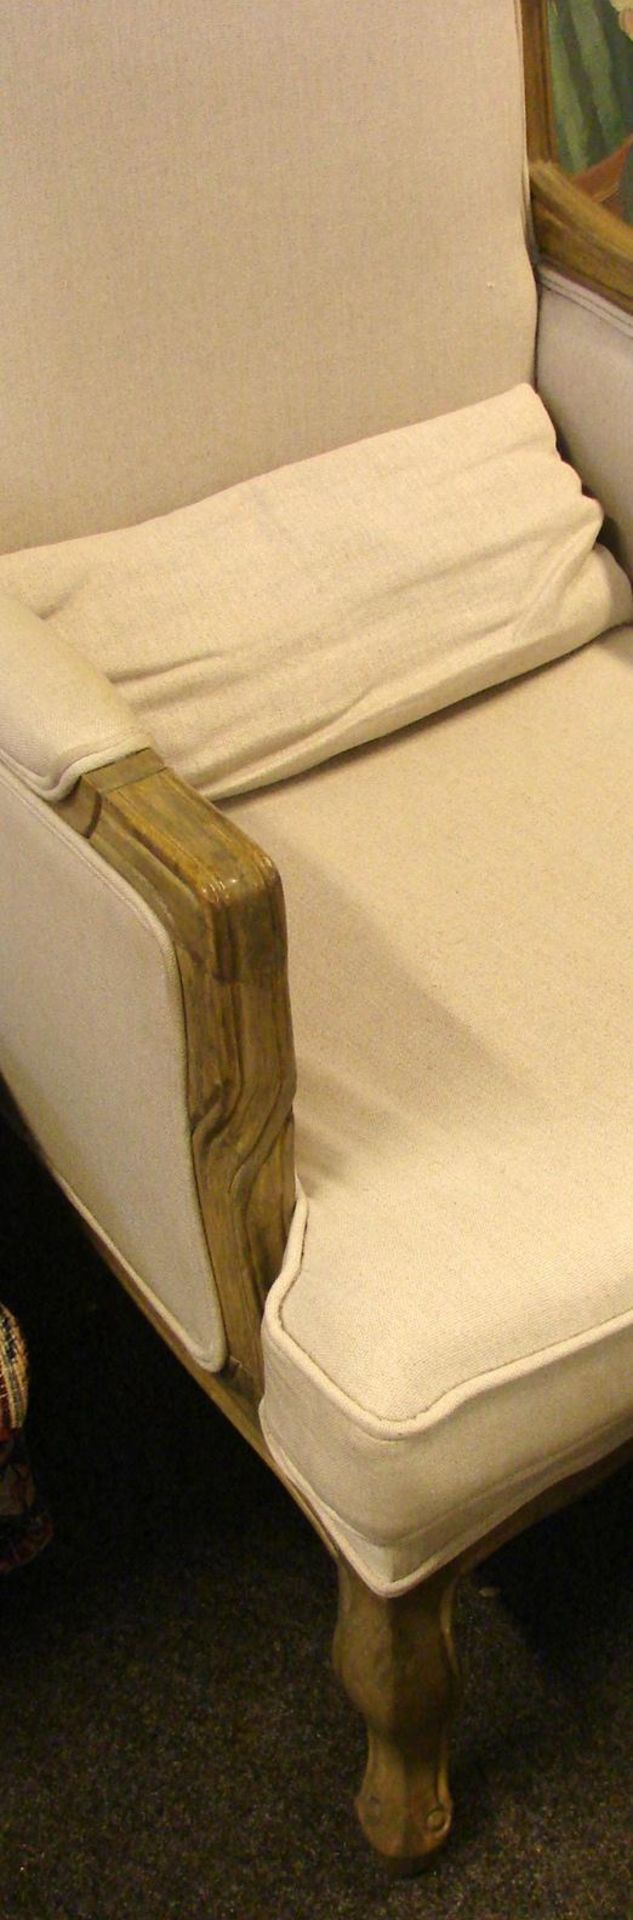 Sessel mit Fusshocker, Holzrahmen, beigefarbender Bezug, Zustand gut, neuzeitlich - Bild 2 aus 2